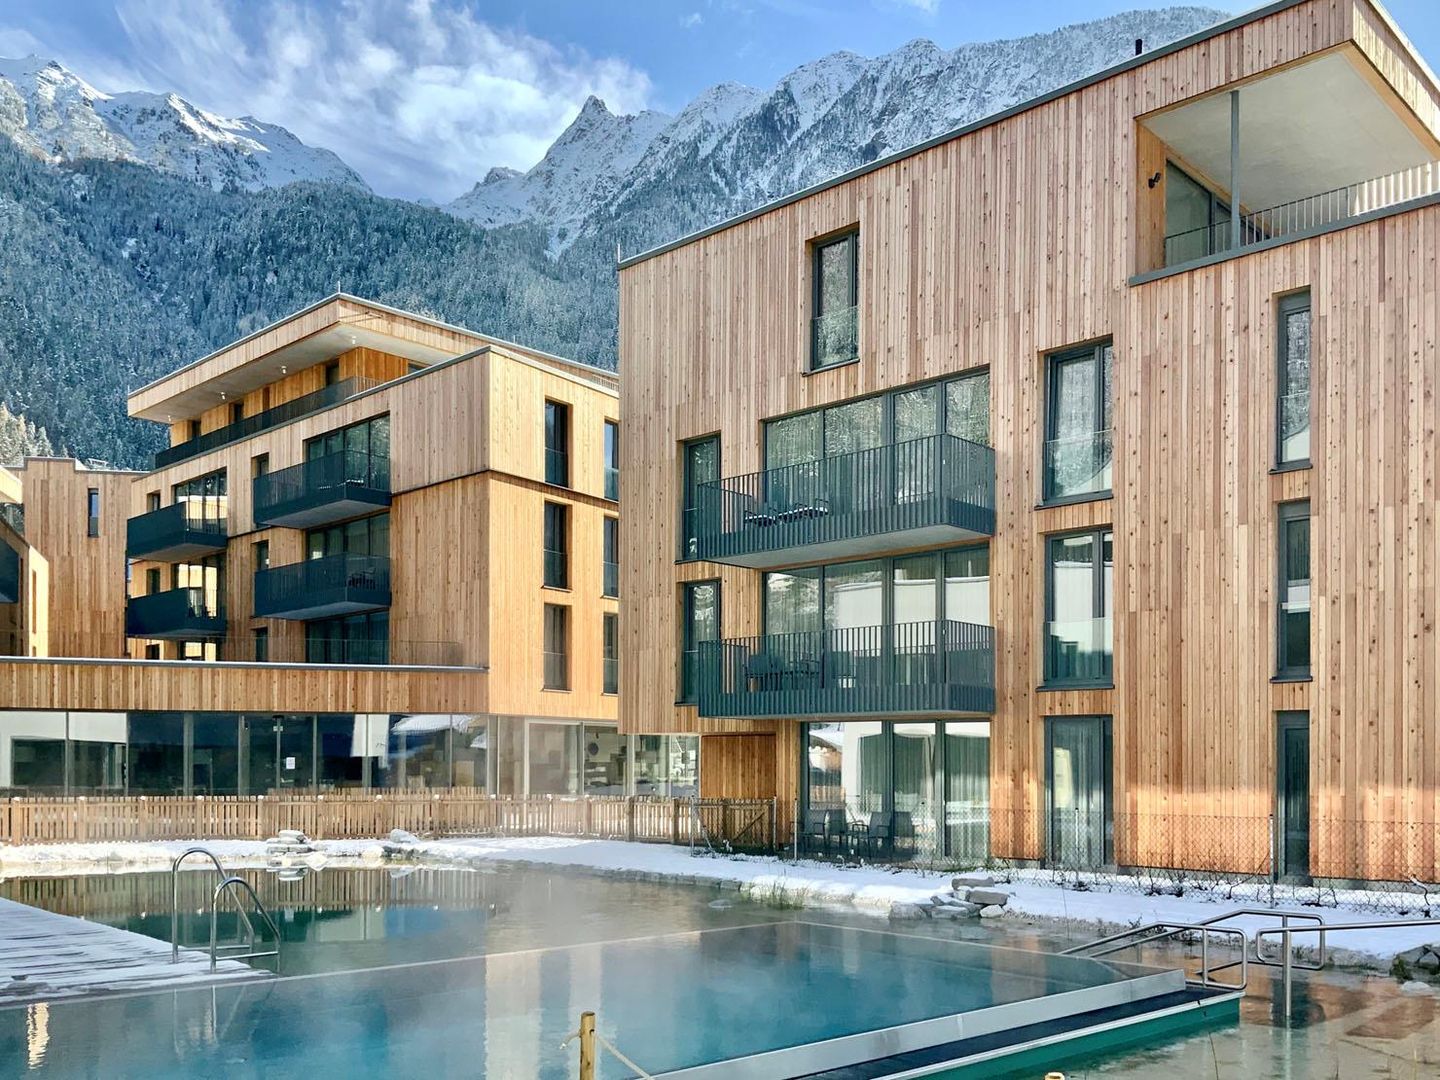 Meer info over All Suite Resort Ötztal  bij Wintertrex